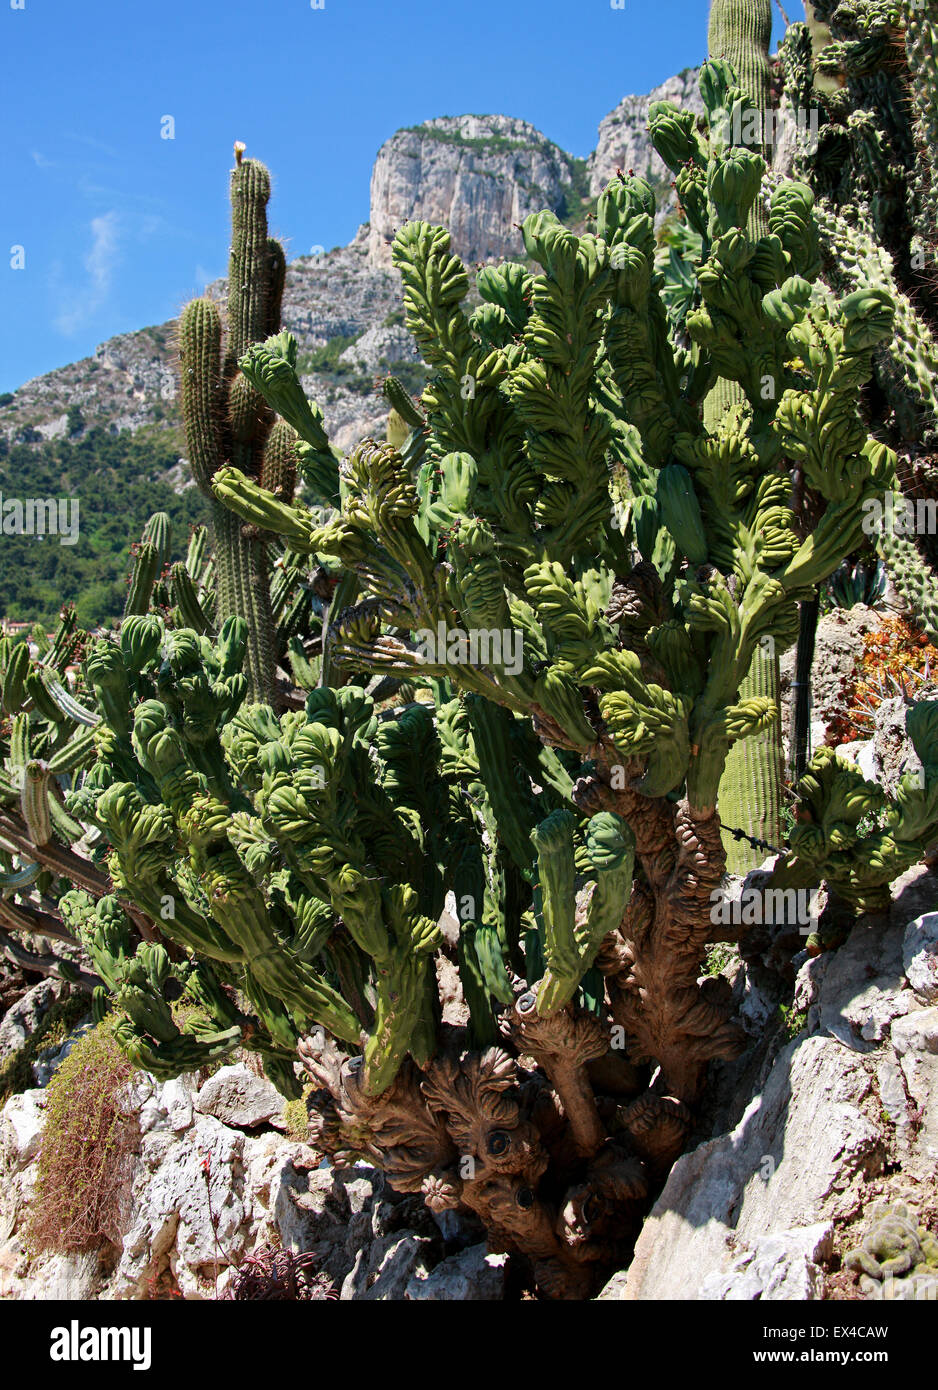 Cristate Polaskia chichipe, Cactus cristata, Cactaceae. Le Mexique. Les Jardins Botaniques de Monaco, Monaco. Banque D'Images